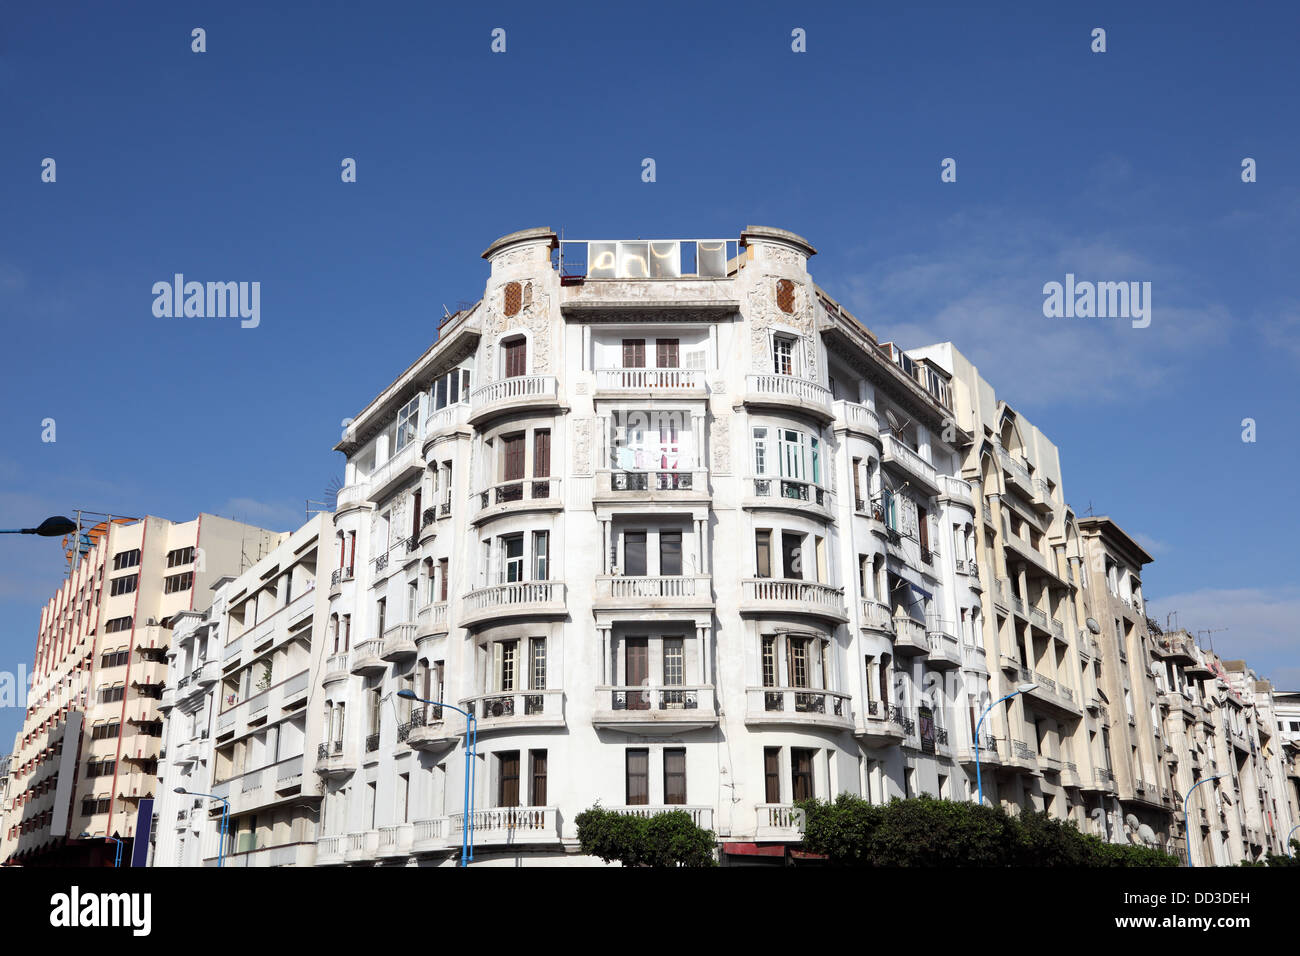 Art Deco architecture in the city of Casablanca, Morocco Stock Photo